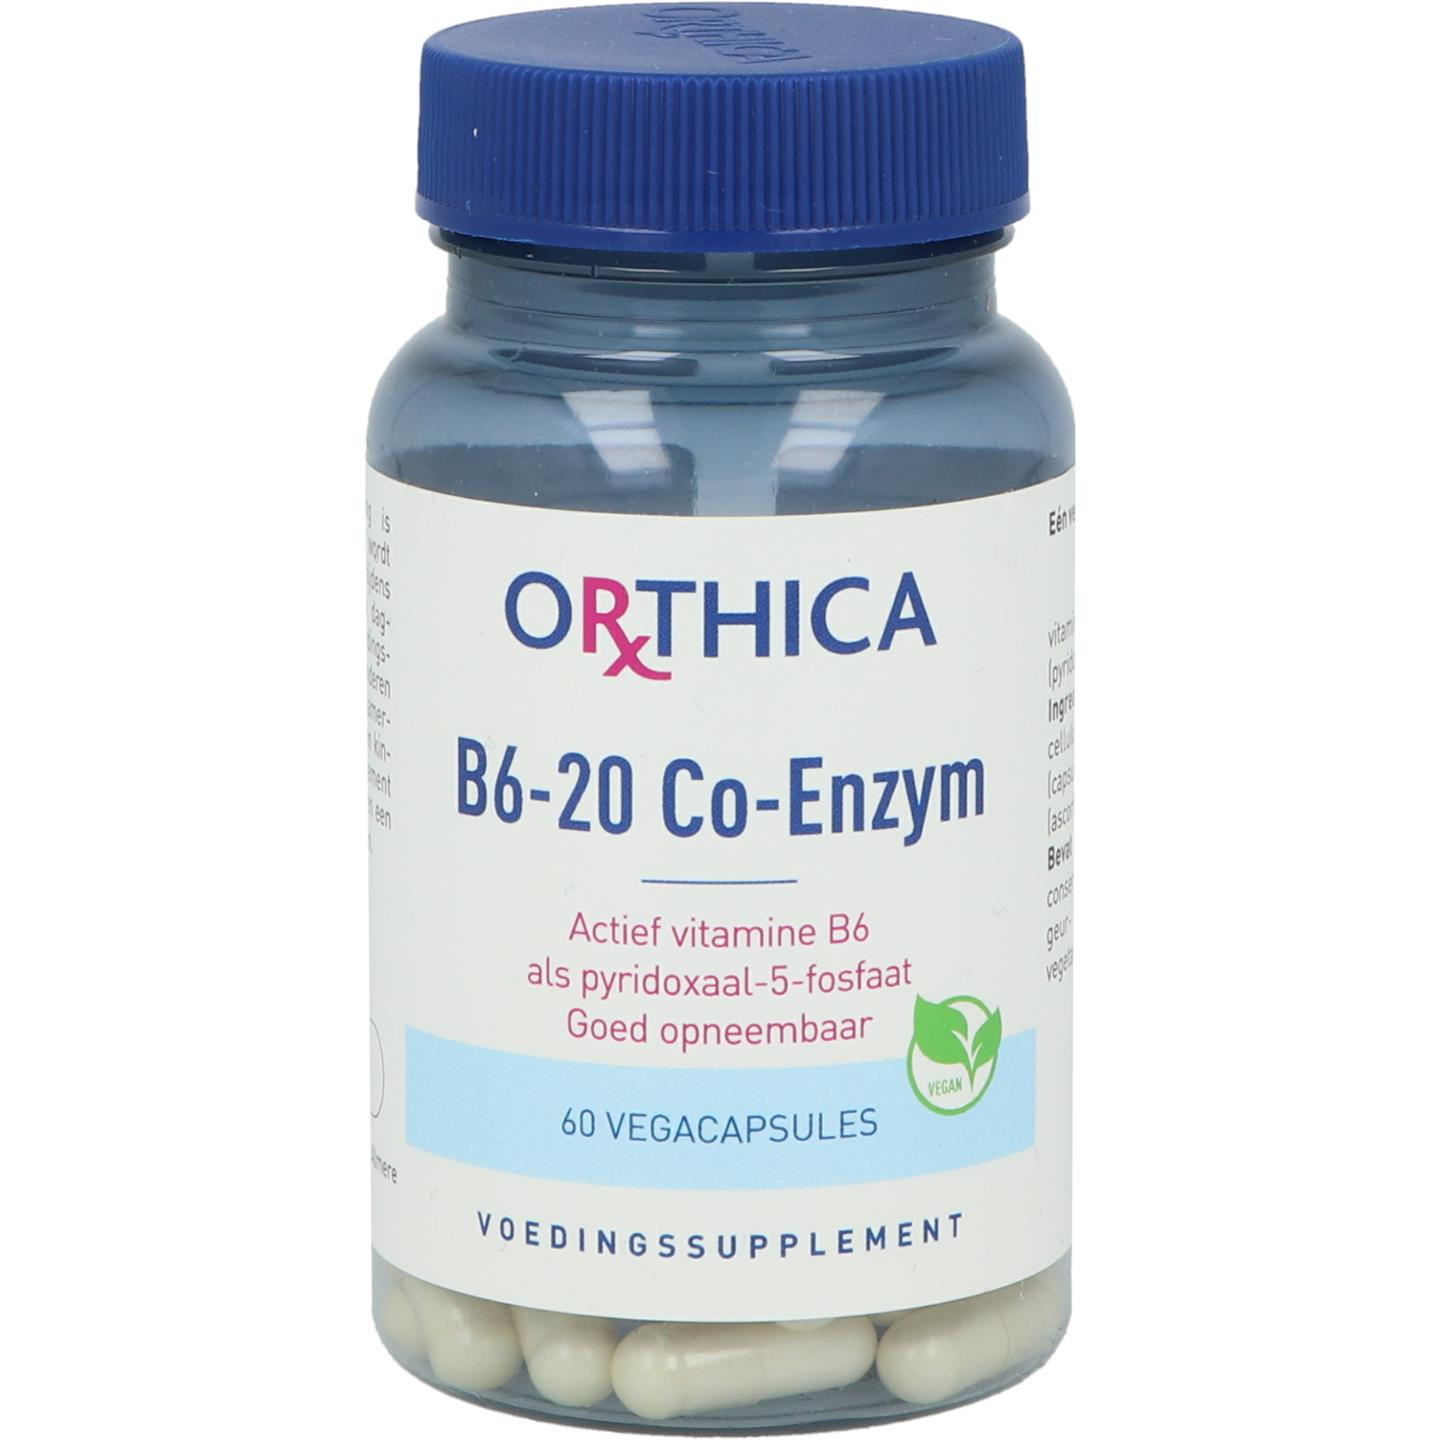 B6-20 Co-Enzym